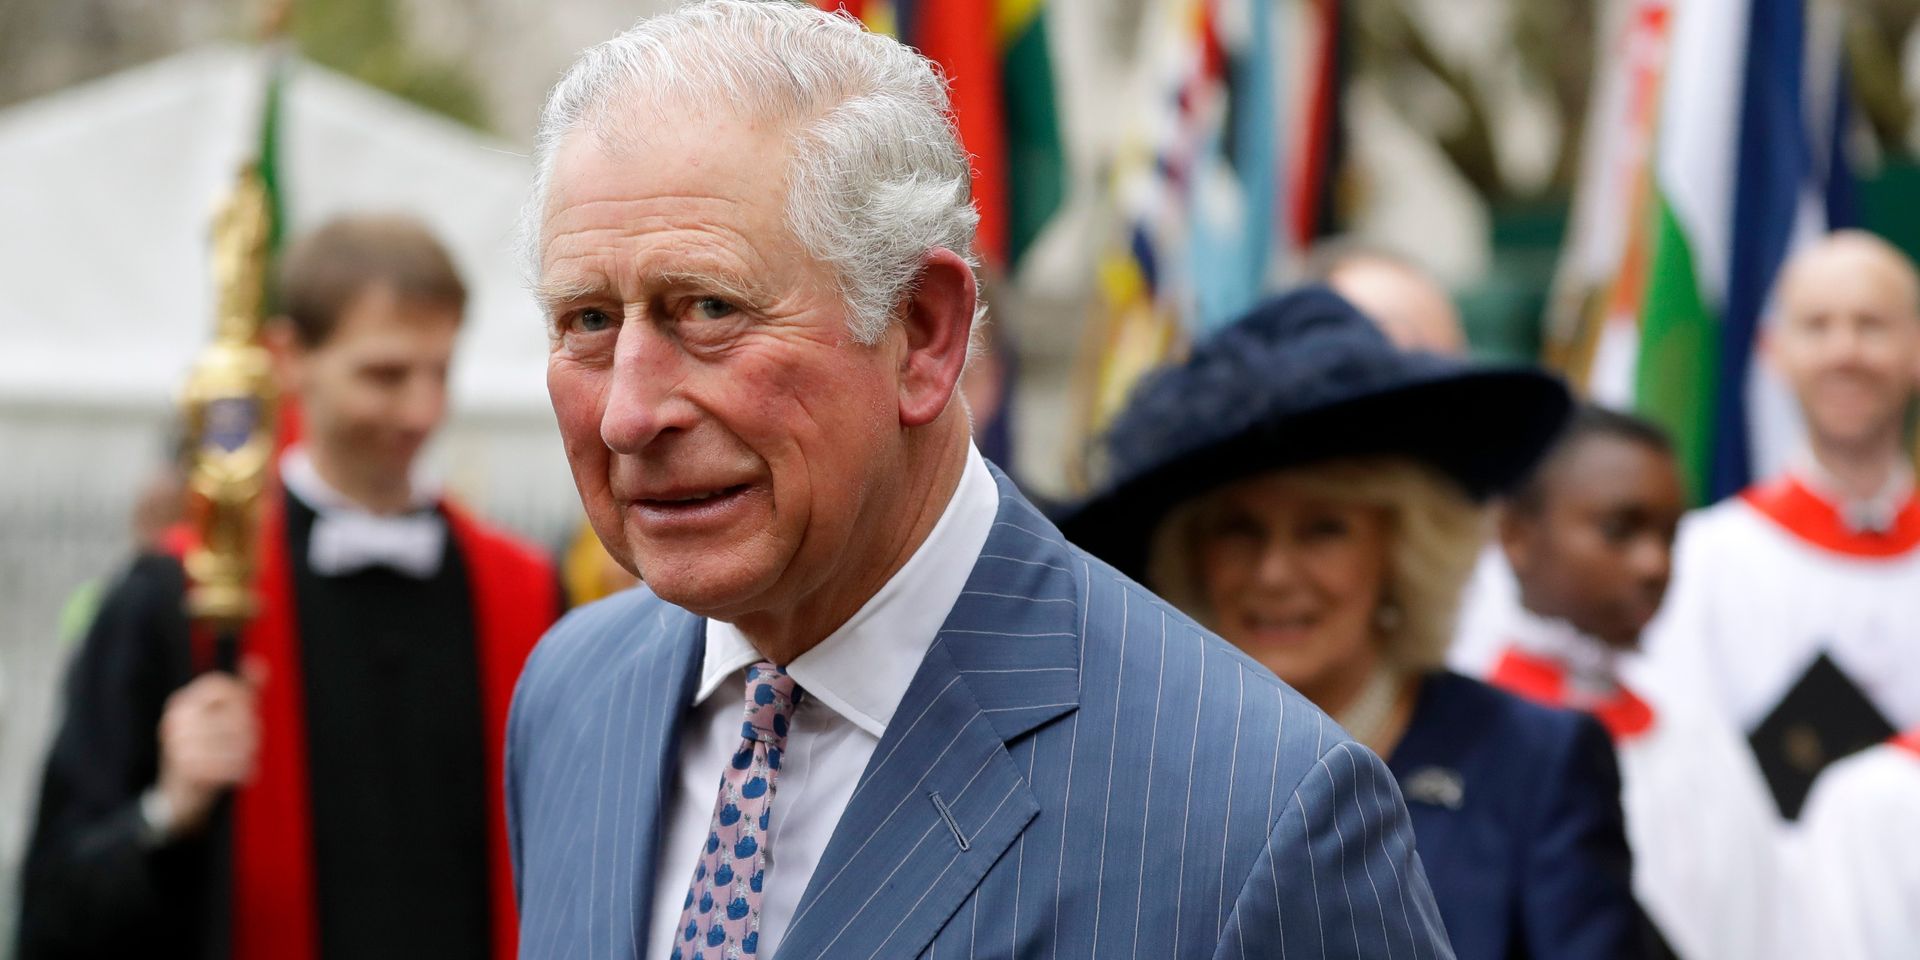 Le prince Charles guéri du coronavirus, il prend la parole